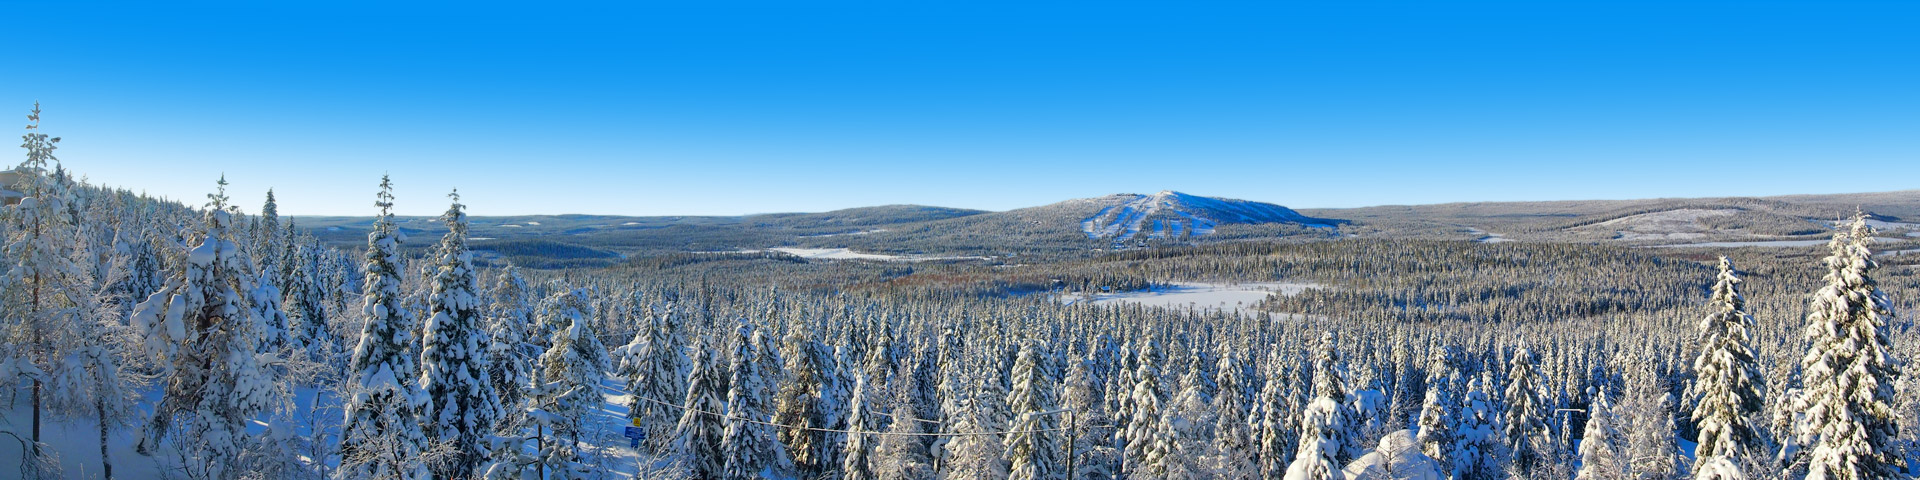 Besneeuwd landschap met bergen in Finland